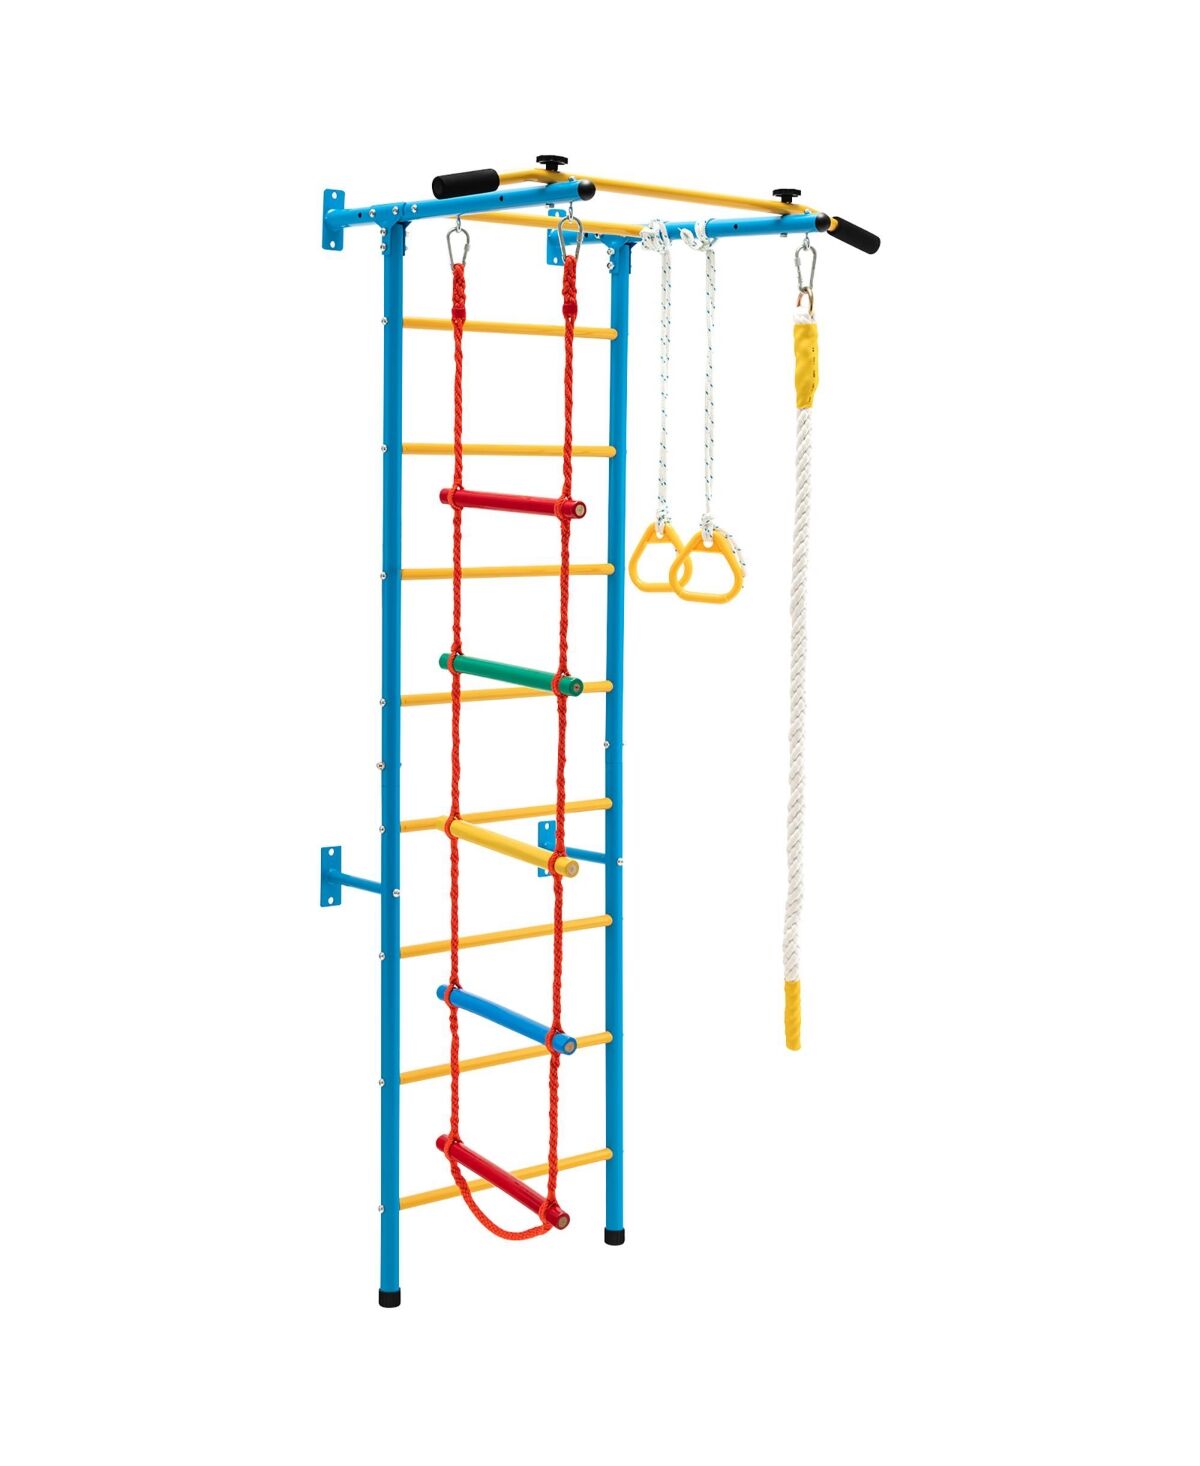 Costway 5 in 1 Kids Indoor Gym Playground Swedish Wall Ladder Children Home Climbing Gym - Blue